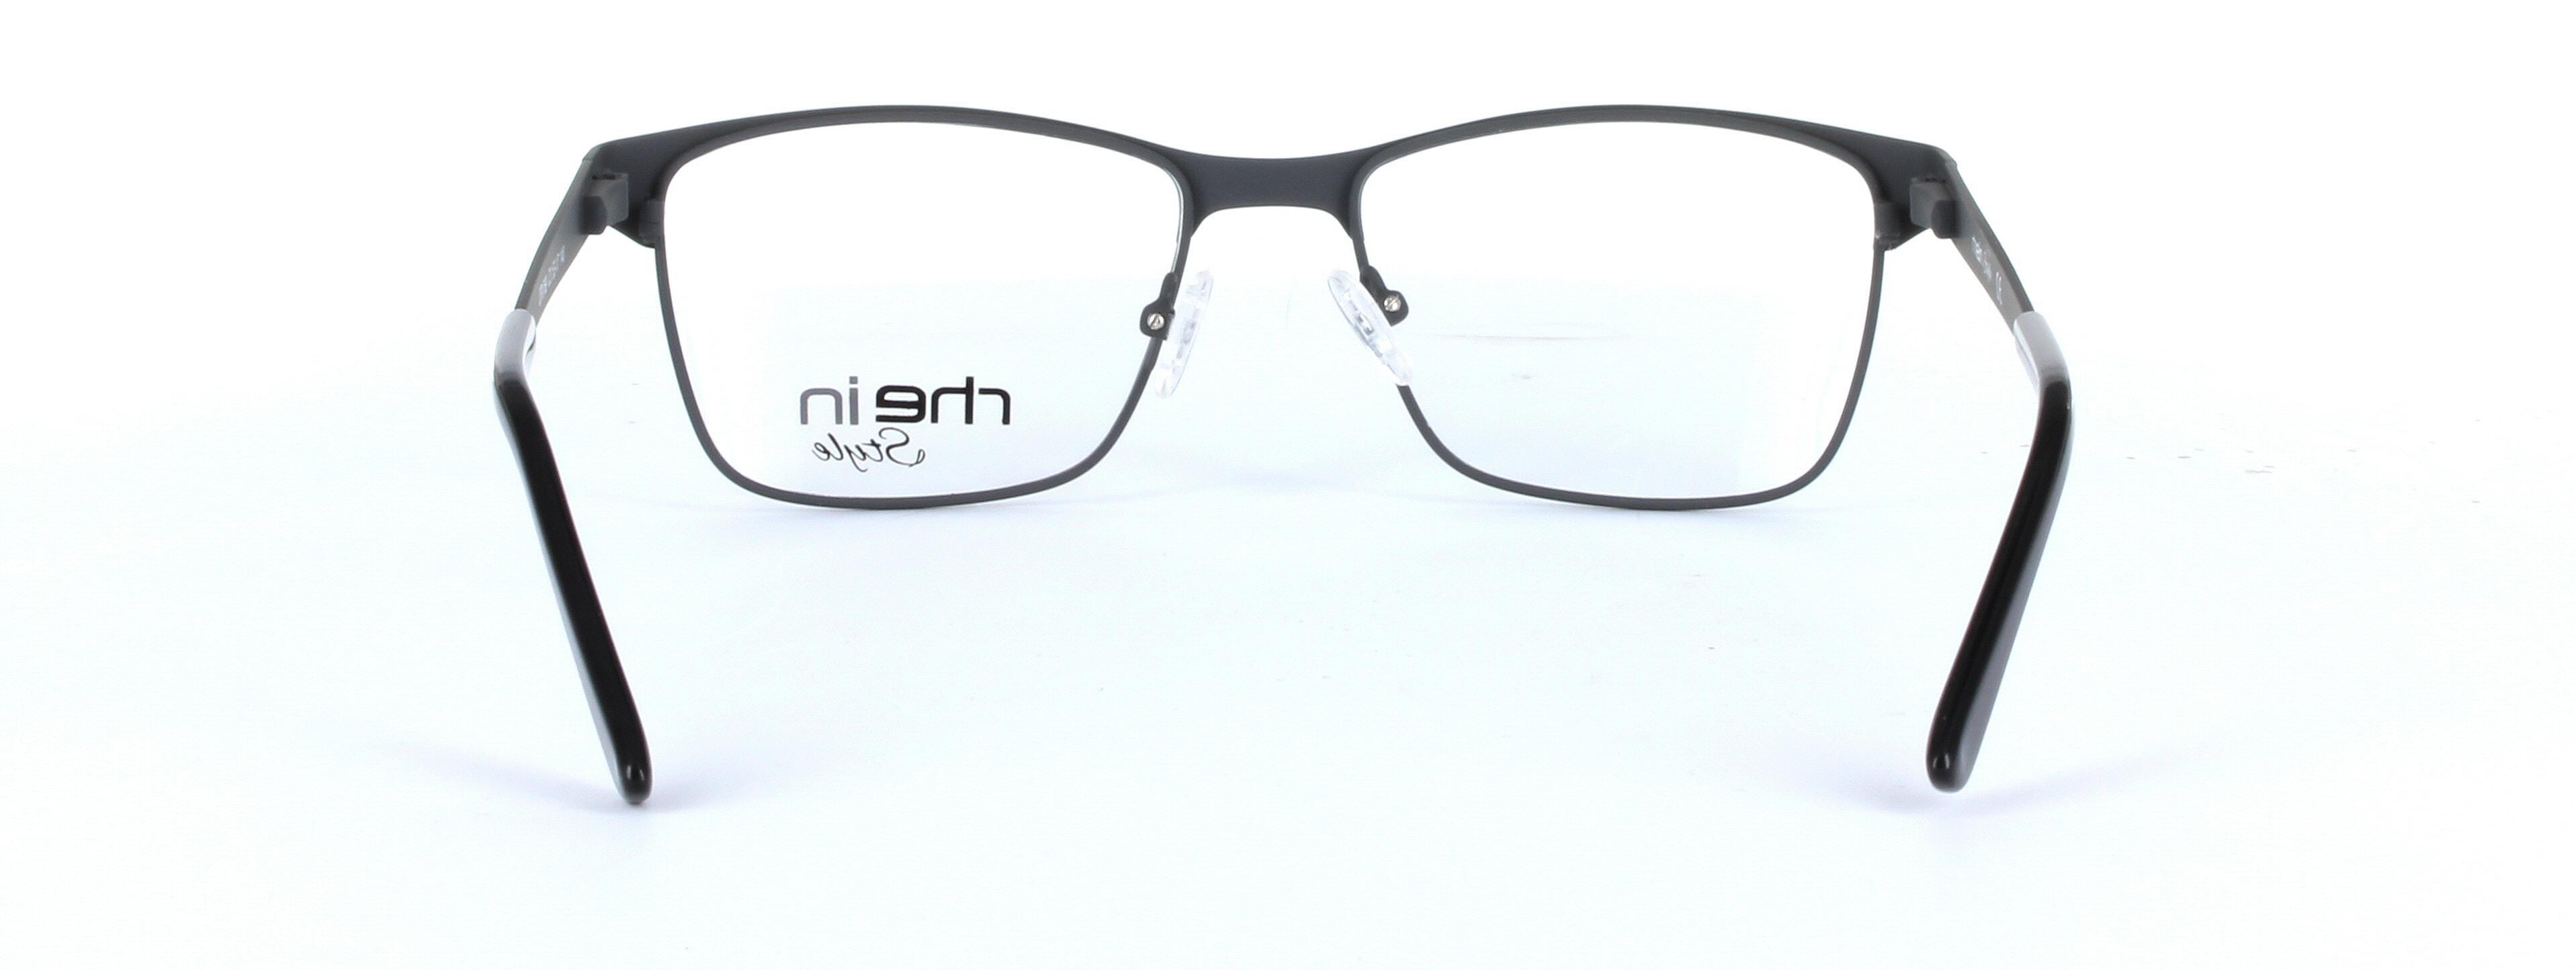 Lyra Black Full Rim Oval Metal Glasses - Image View 3